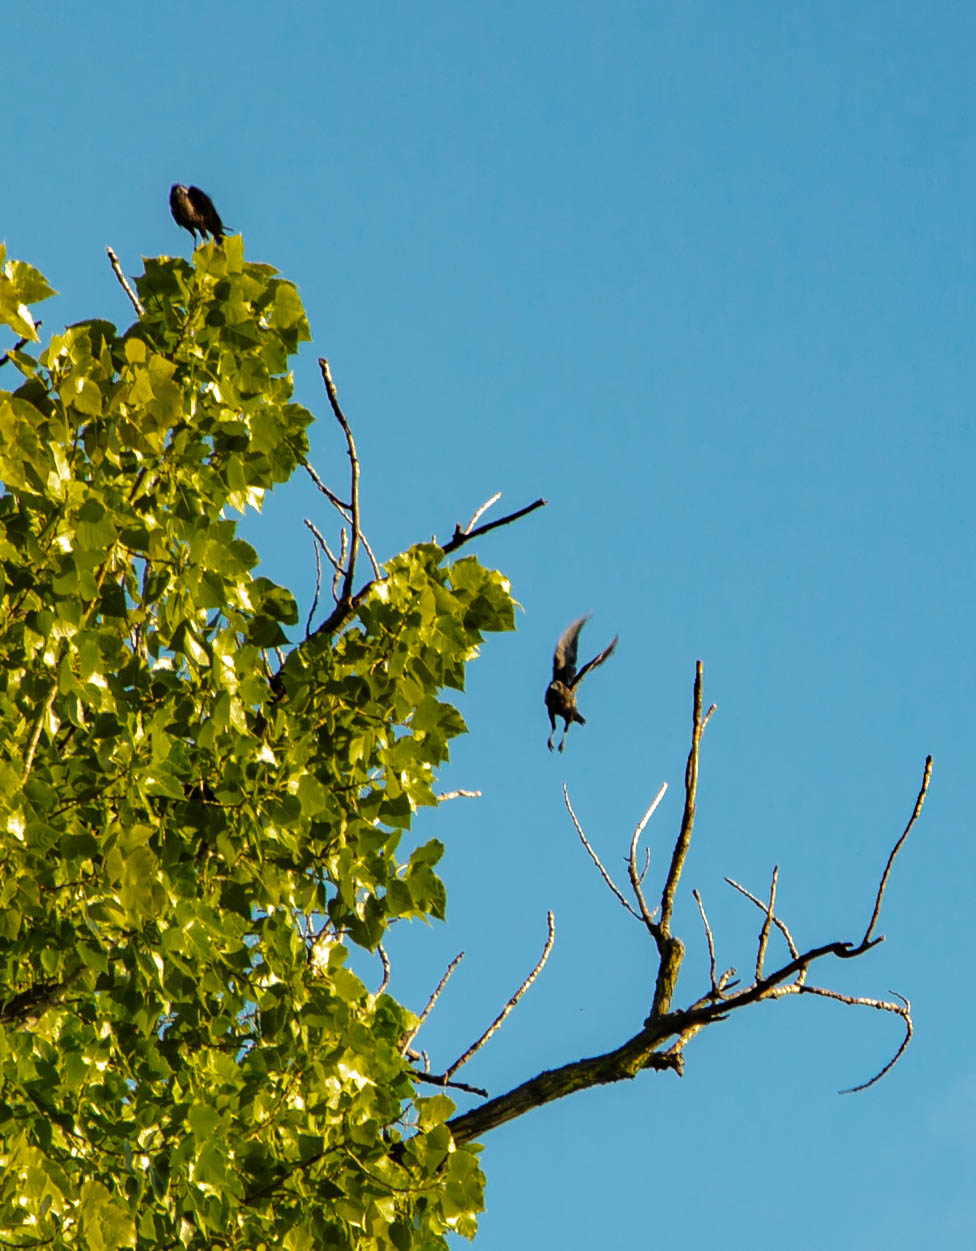 A bird standing and a bird landing on a treetop